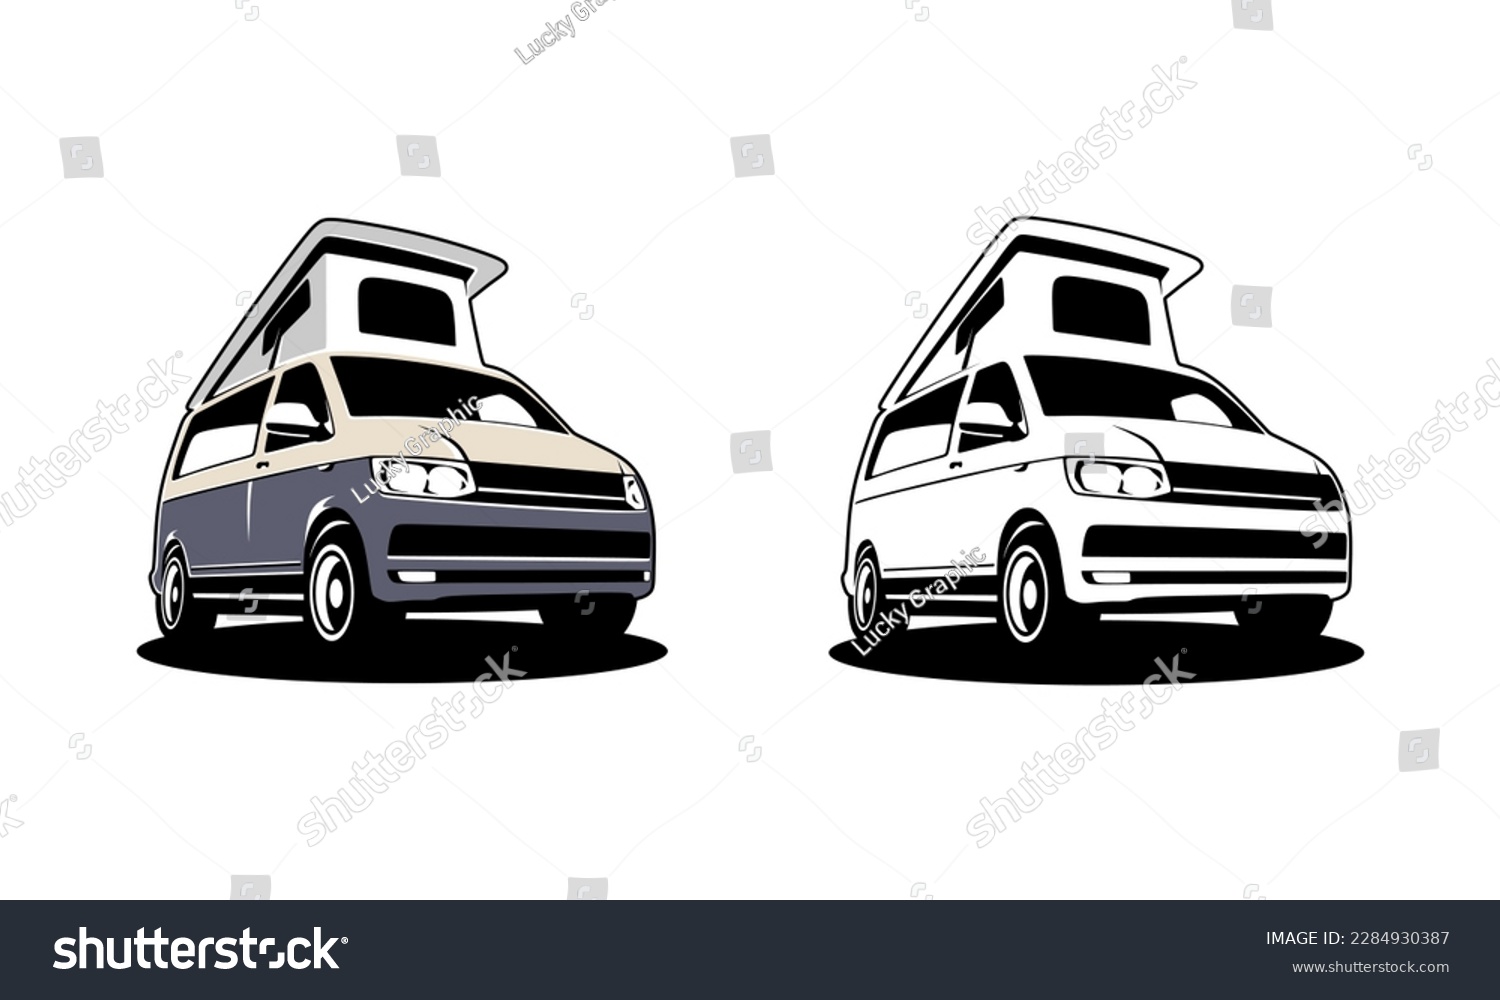 SVG of RV camper van classic style logo vector illustration, camper van with pop up - roof top tent illustration logo design svg